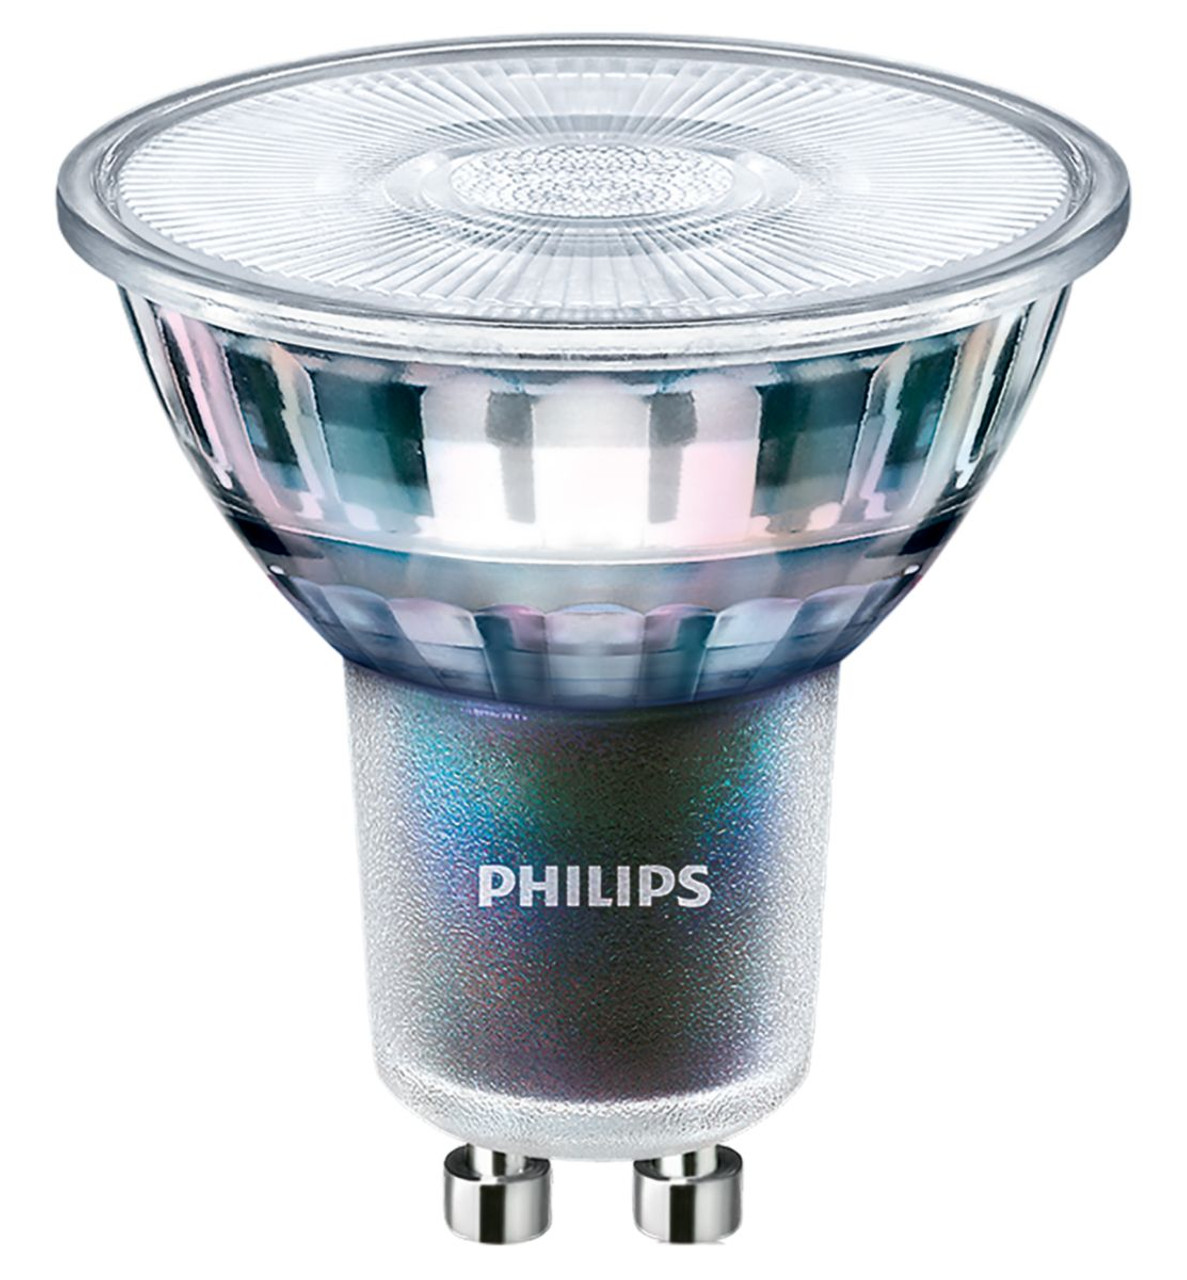 Philips Lighting MASTER LED 3.9-35W GU10 940 36D LED Spots